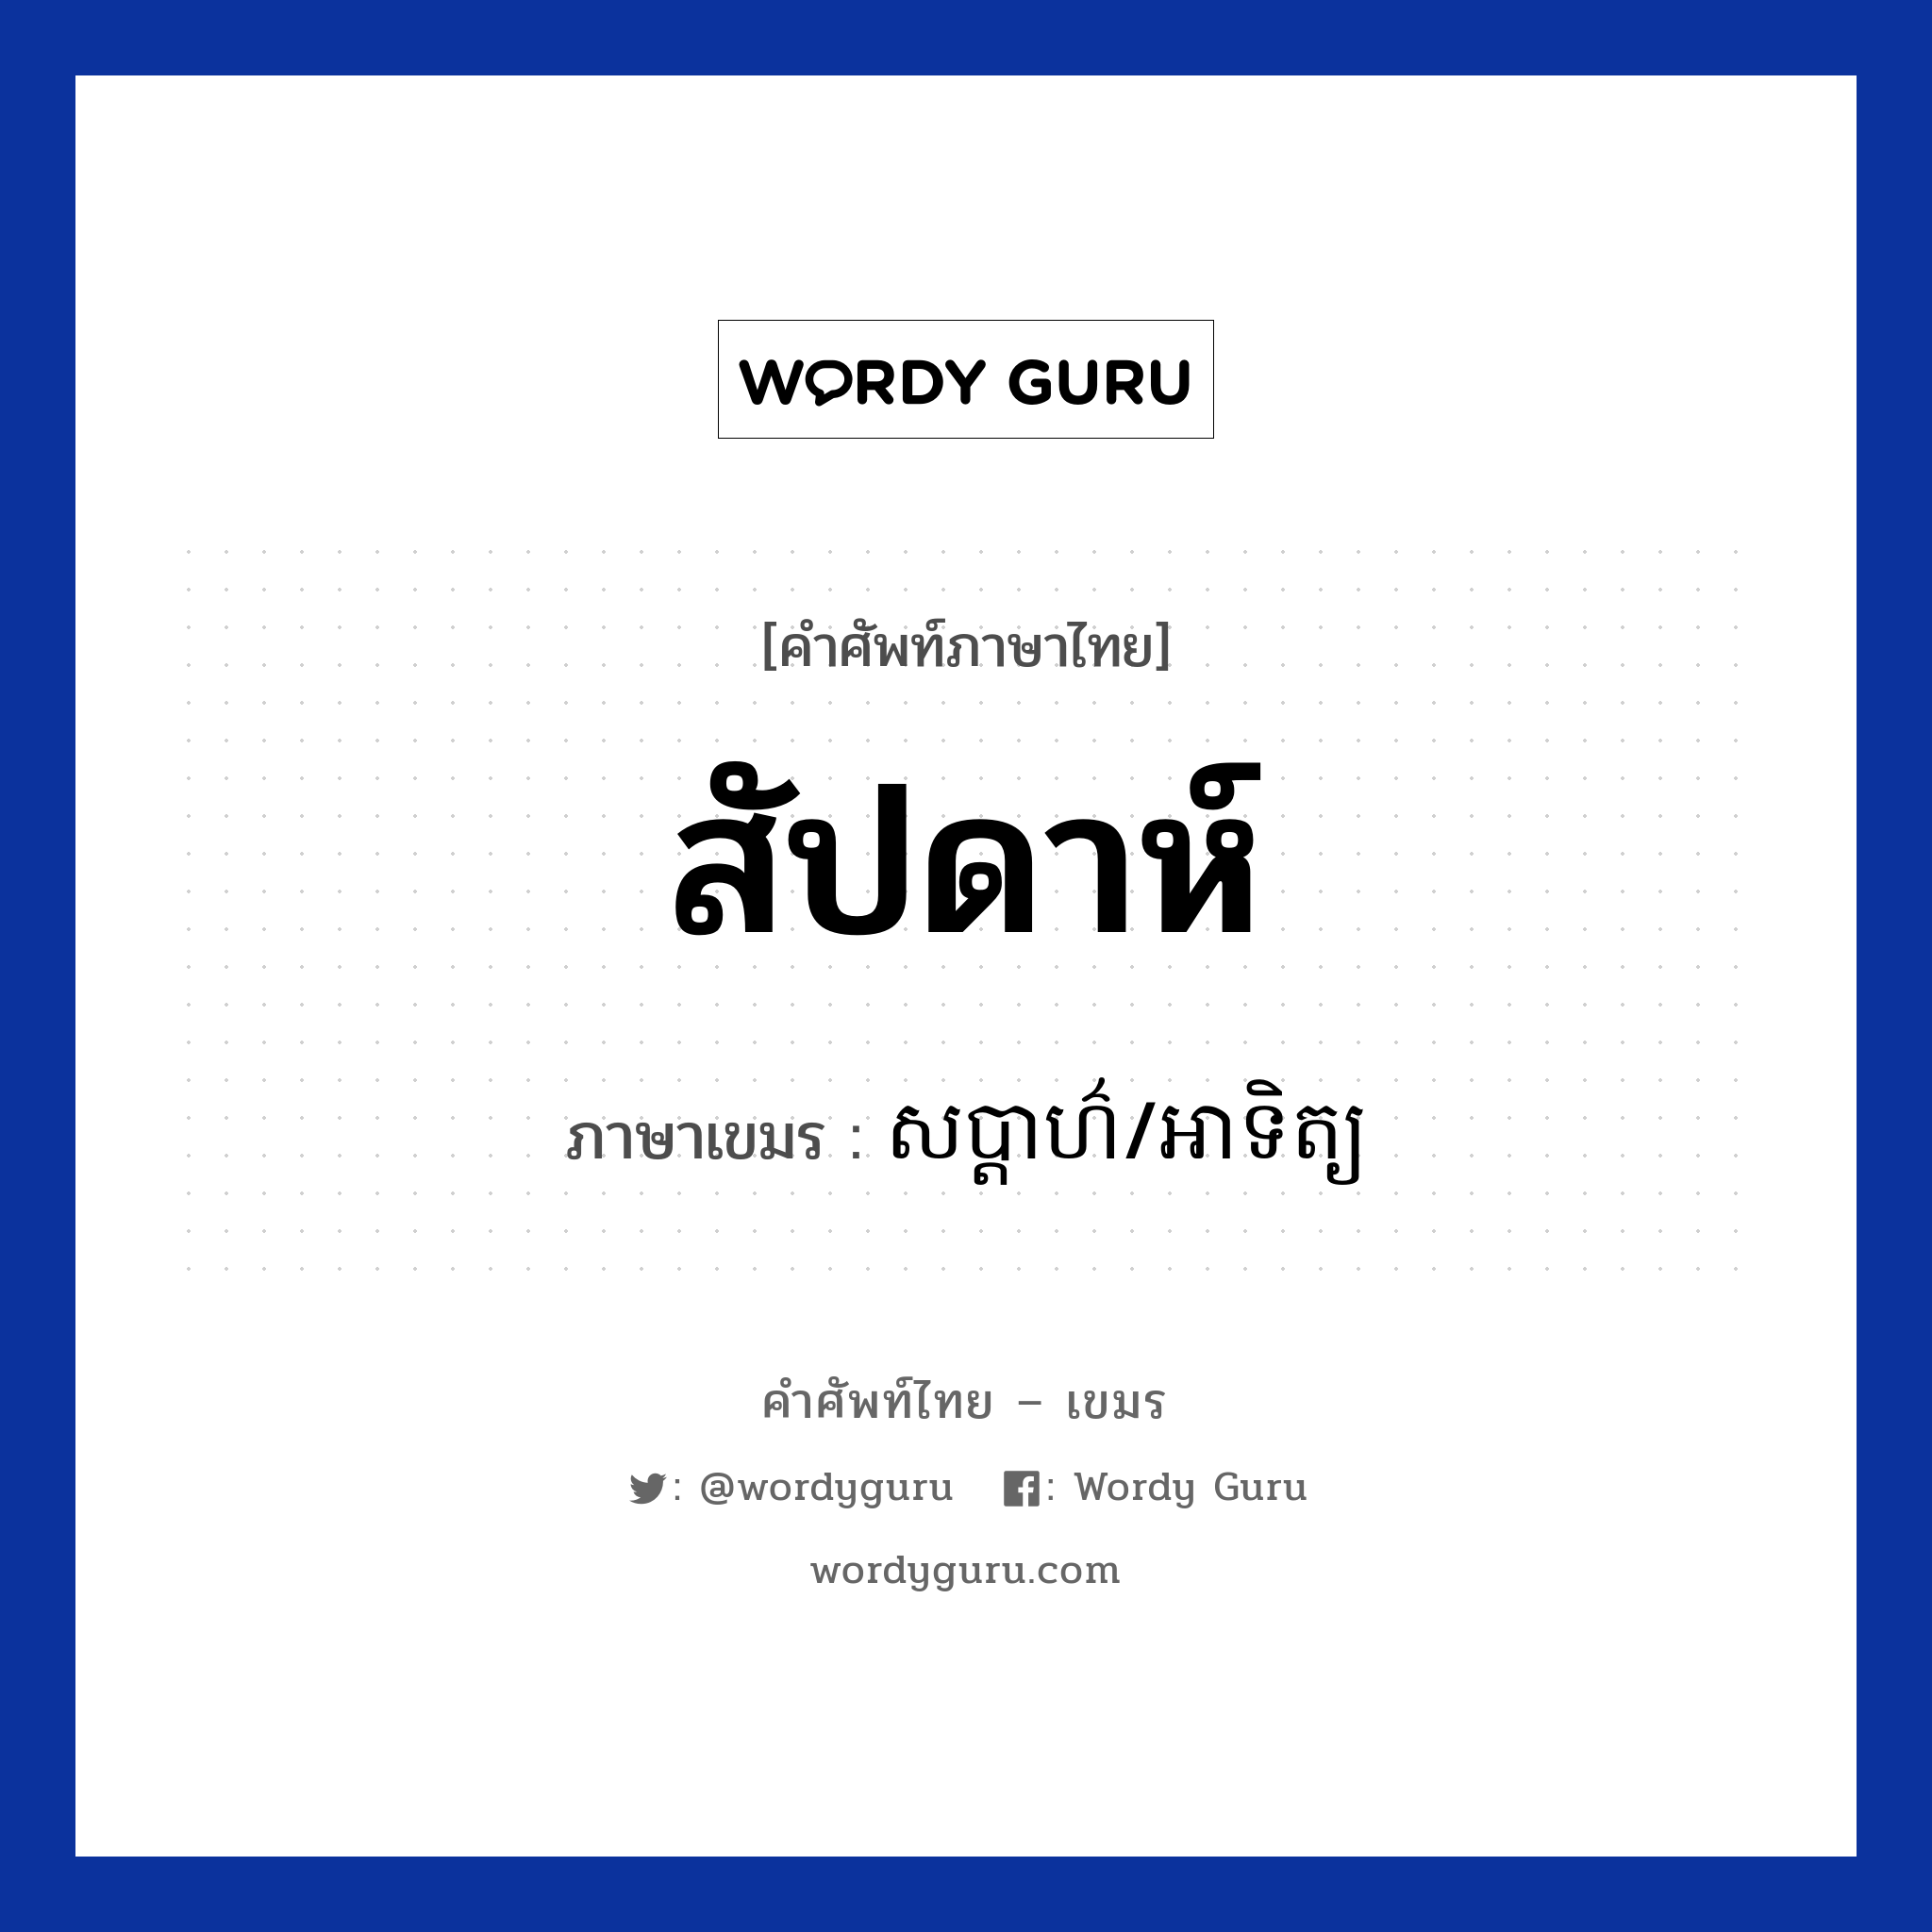 สัปดาห์ ภาษาเขมรคืออะไร, คำศัพท์ภาษาไทย - เขมร สัปดาห์ ภาษาเขมร សប្តាហ៌/អាទិត្យ หมวด การนับเลข Sabada/Artit หมวด การนับเลข